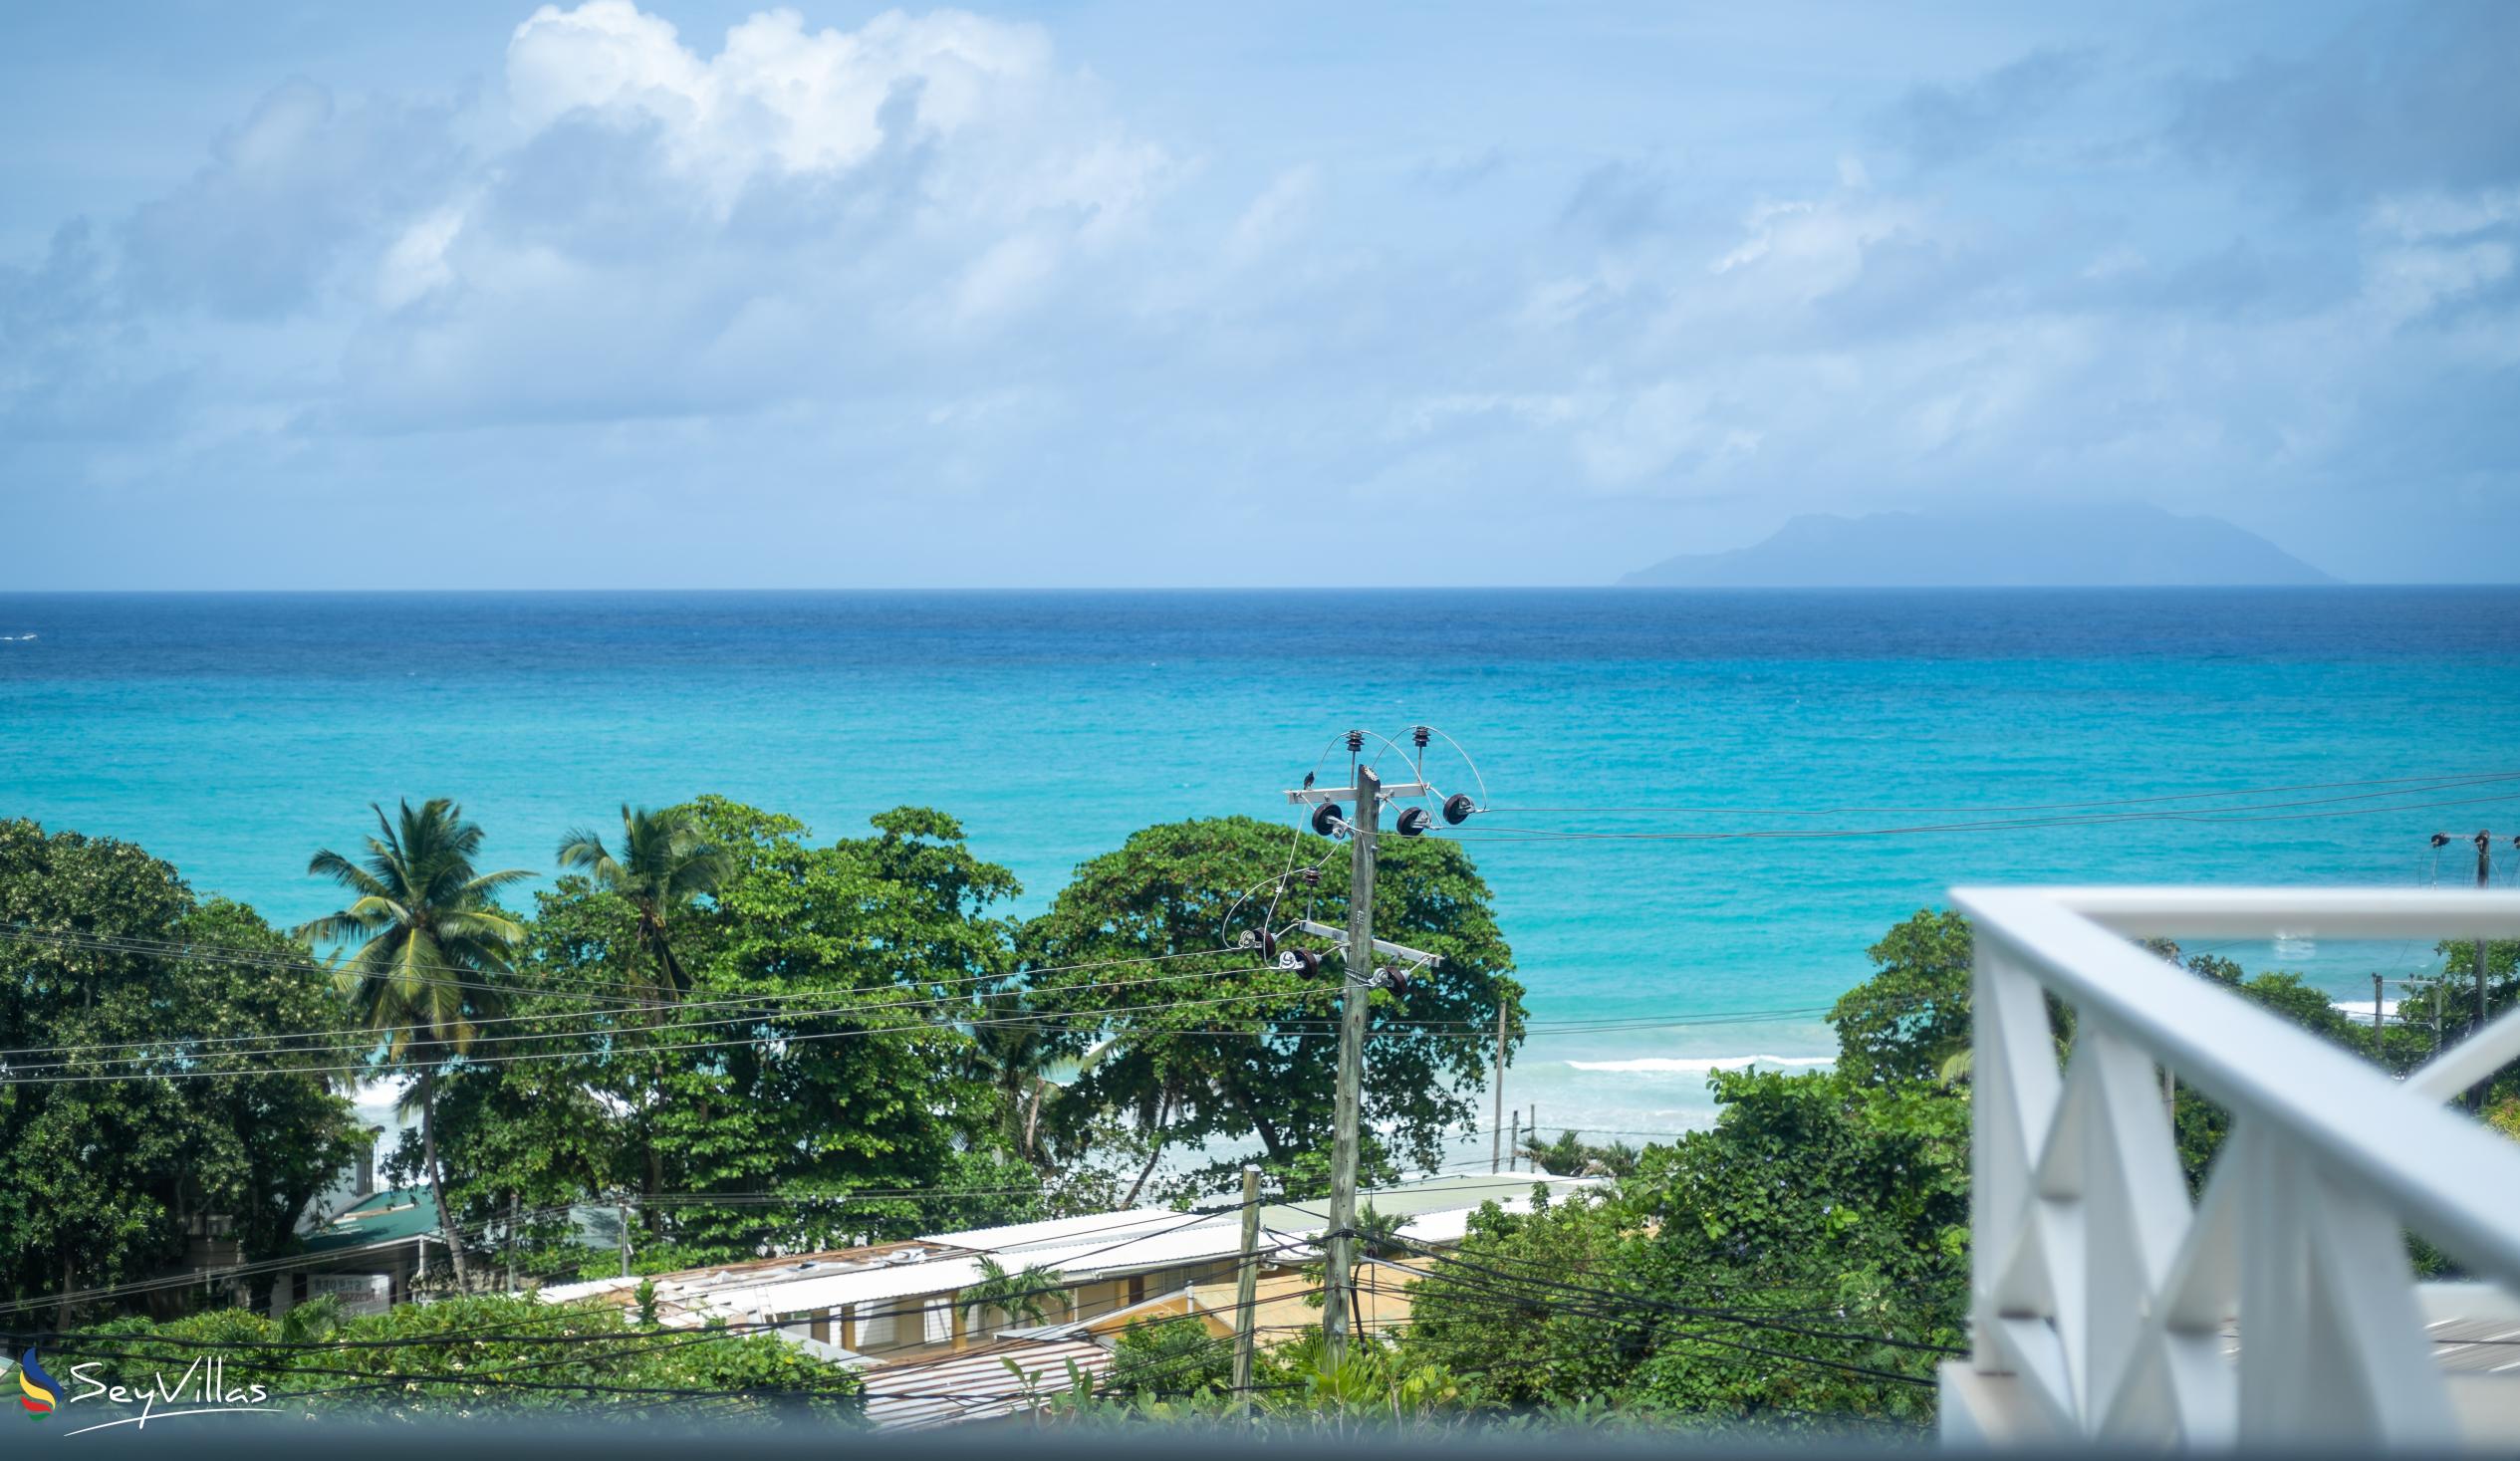 Photo 49: Villa Roscia - Ocean View Room - Mahé (Seychelles)